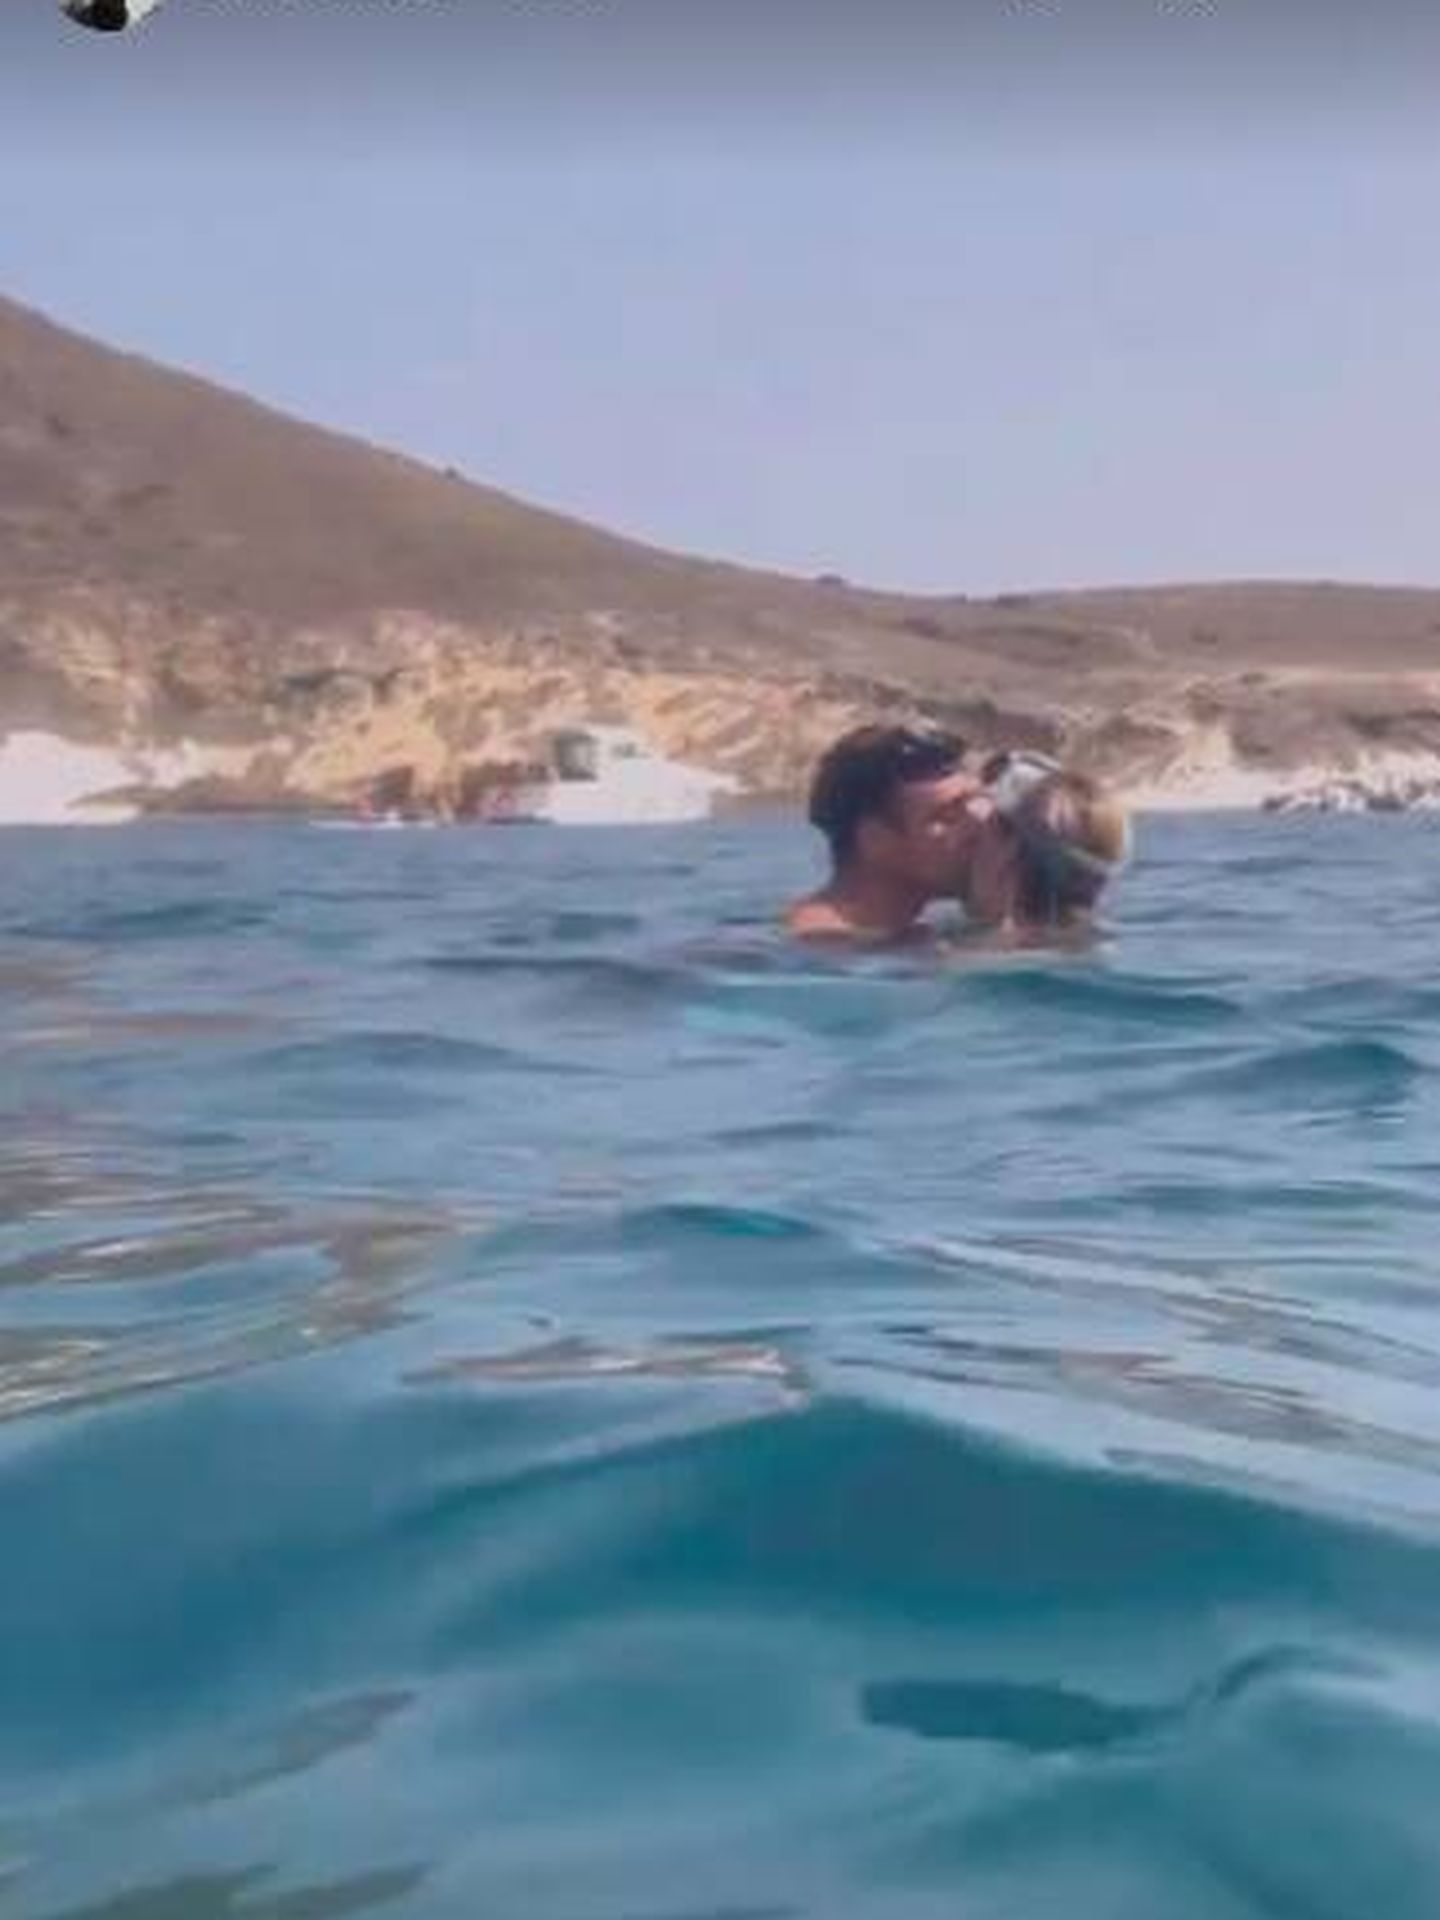 Enrique, Ana y el beso marino. (Instagram/@anasoria.7)